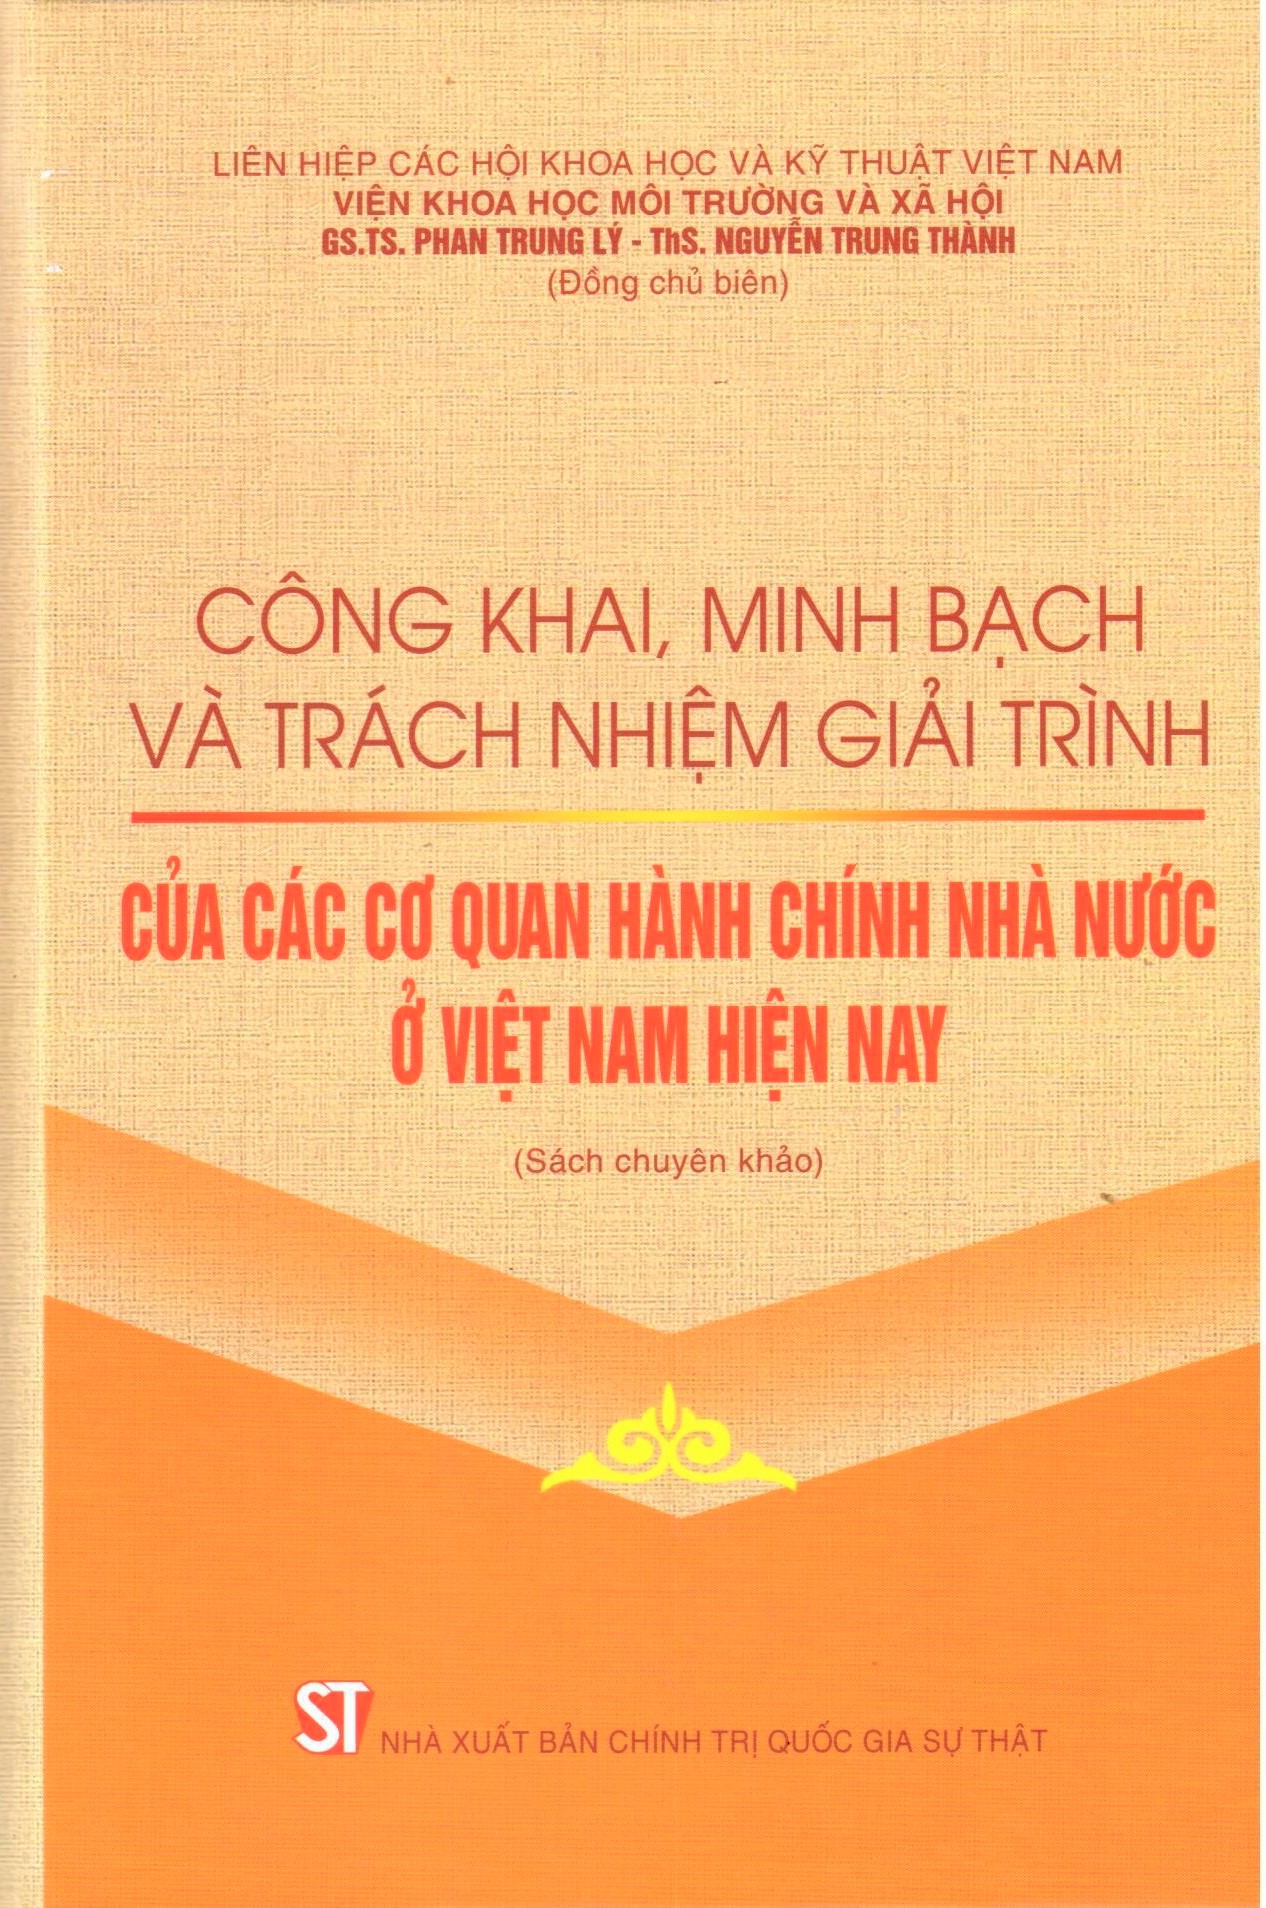 Công khai, minh bạch và trách nhiệm giải trình của các cơ quan hành chính nhà nước ở Việt Nam (Sách chuyên khảo)